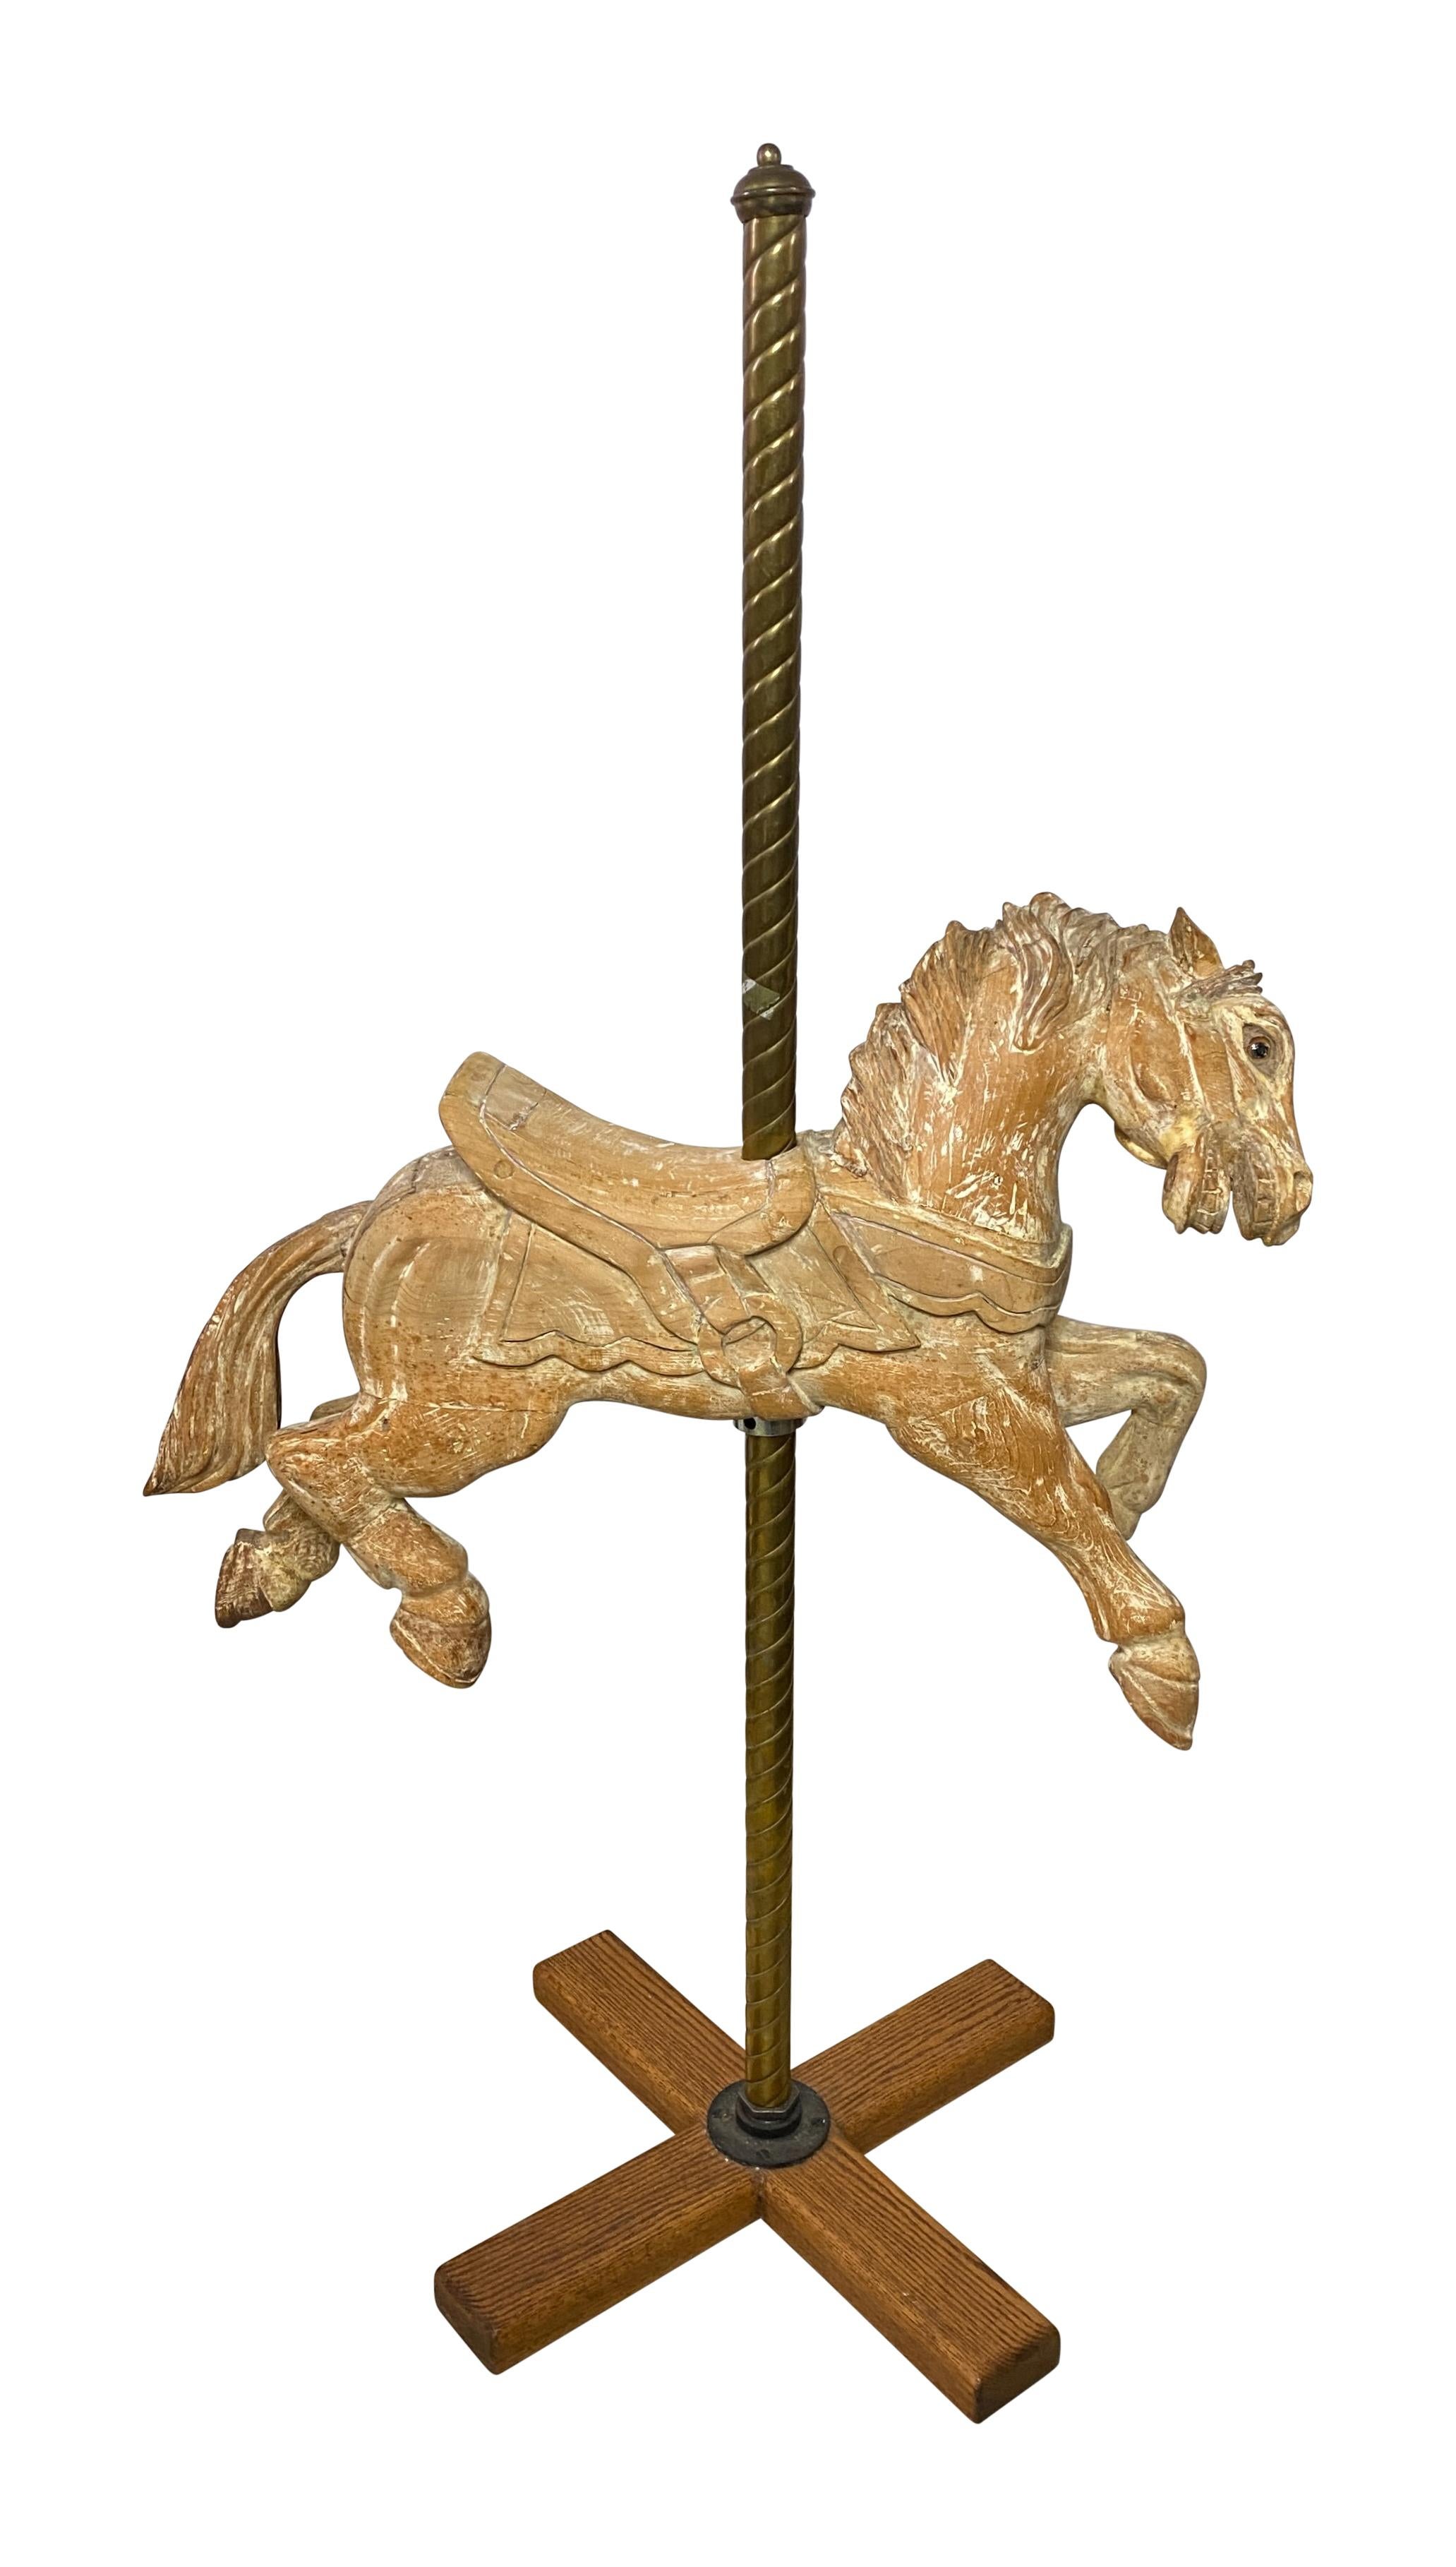 Cheval de carrousel ancien en bois sur un support en laiton fait sur mesure. 
Sculptée de façon experte avec de merveilleux détails.
Peint à l'origine mais débarrassé de la plupart de ses anciennes peintures à un moment donné.
Fabriqué dans la